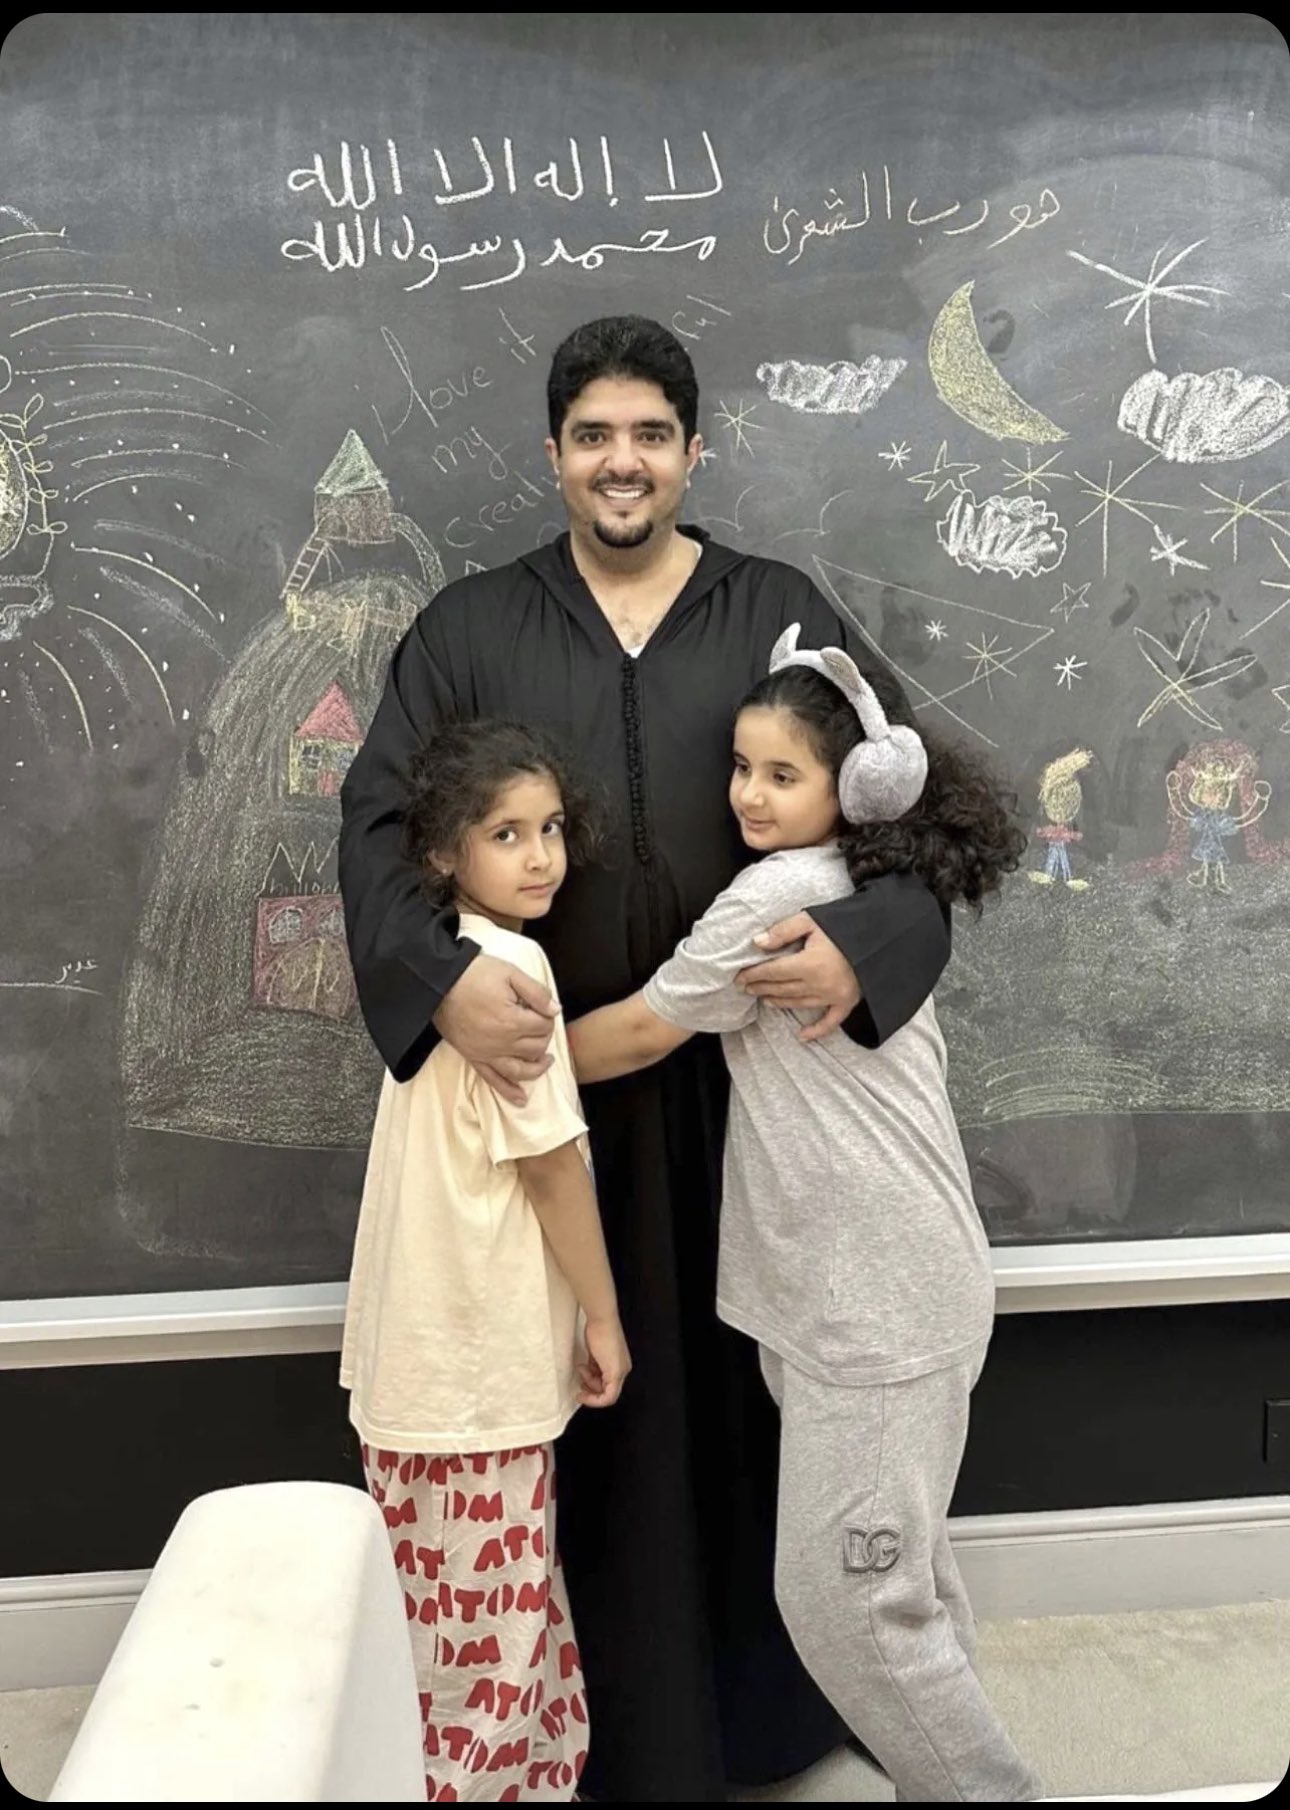 الأمير عبد العزيز بن فهد مع بناته